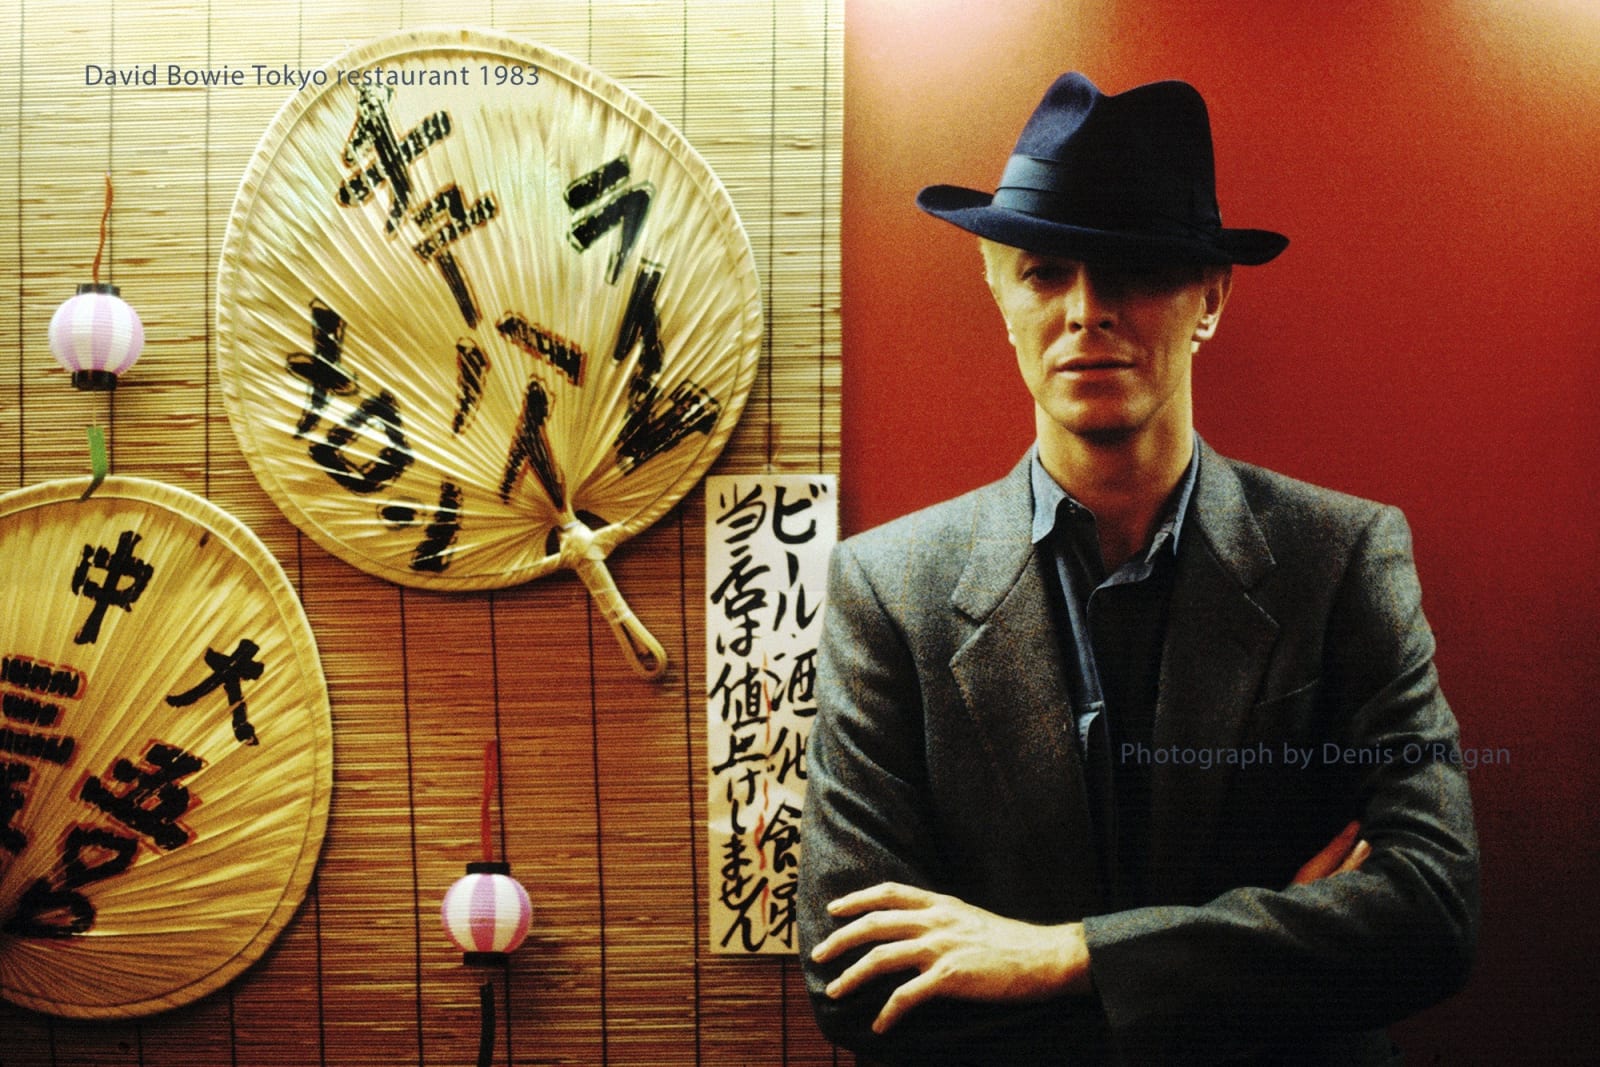 DAVID BOWIE, David Bowie Tokyo Restaurant, 1983